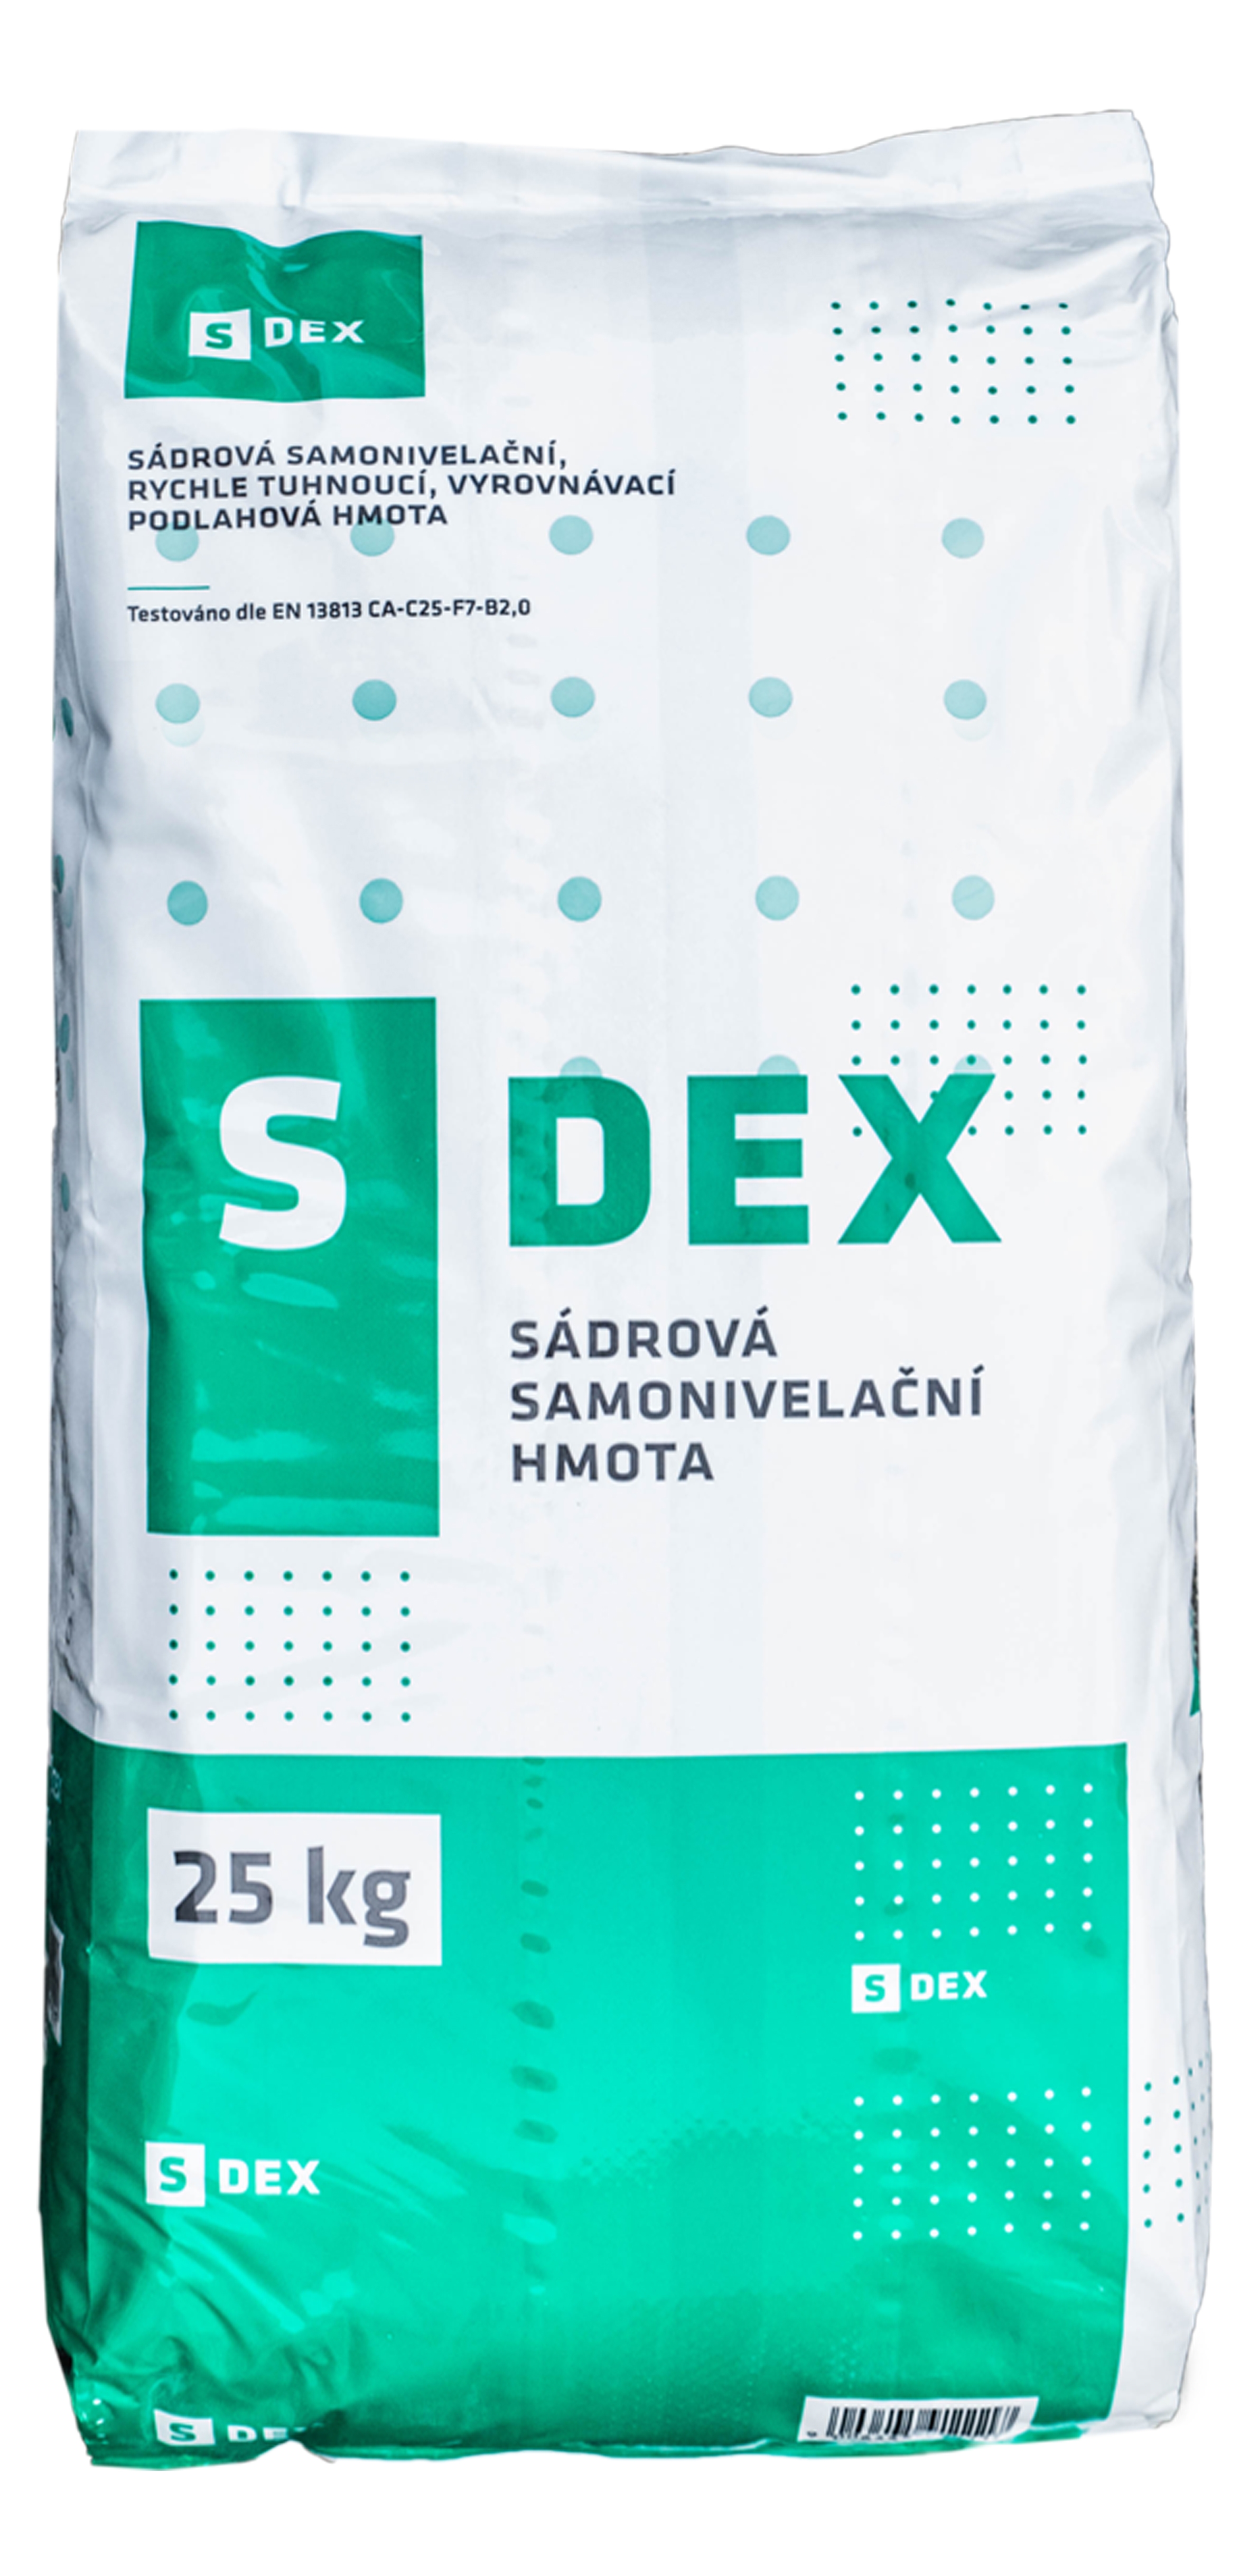 Ardex S-DEX 25 kg